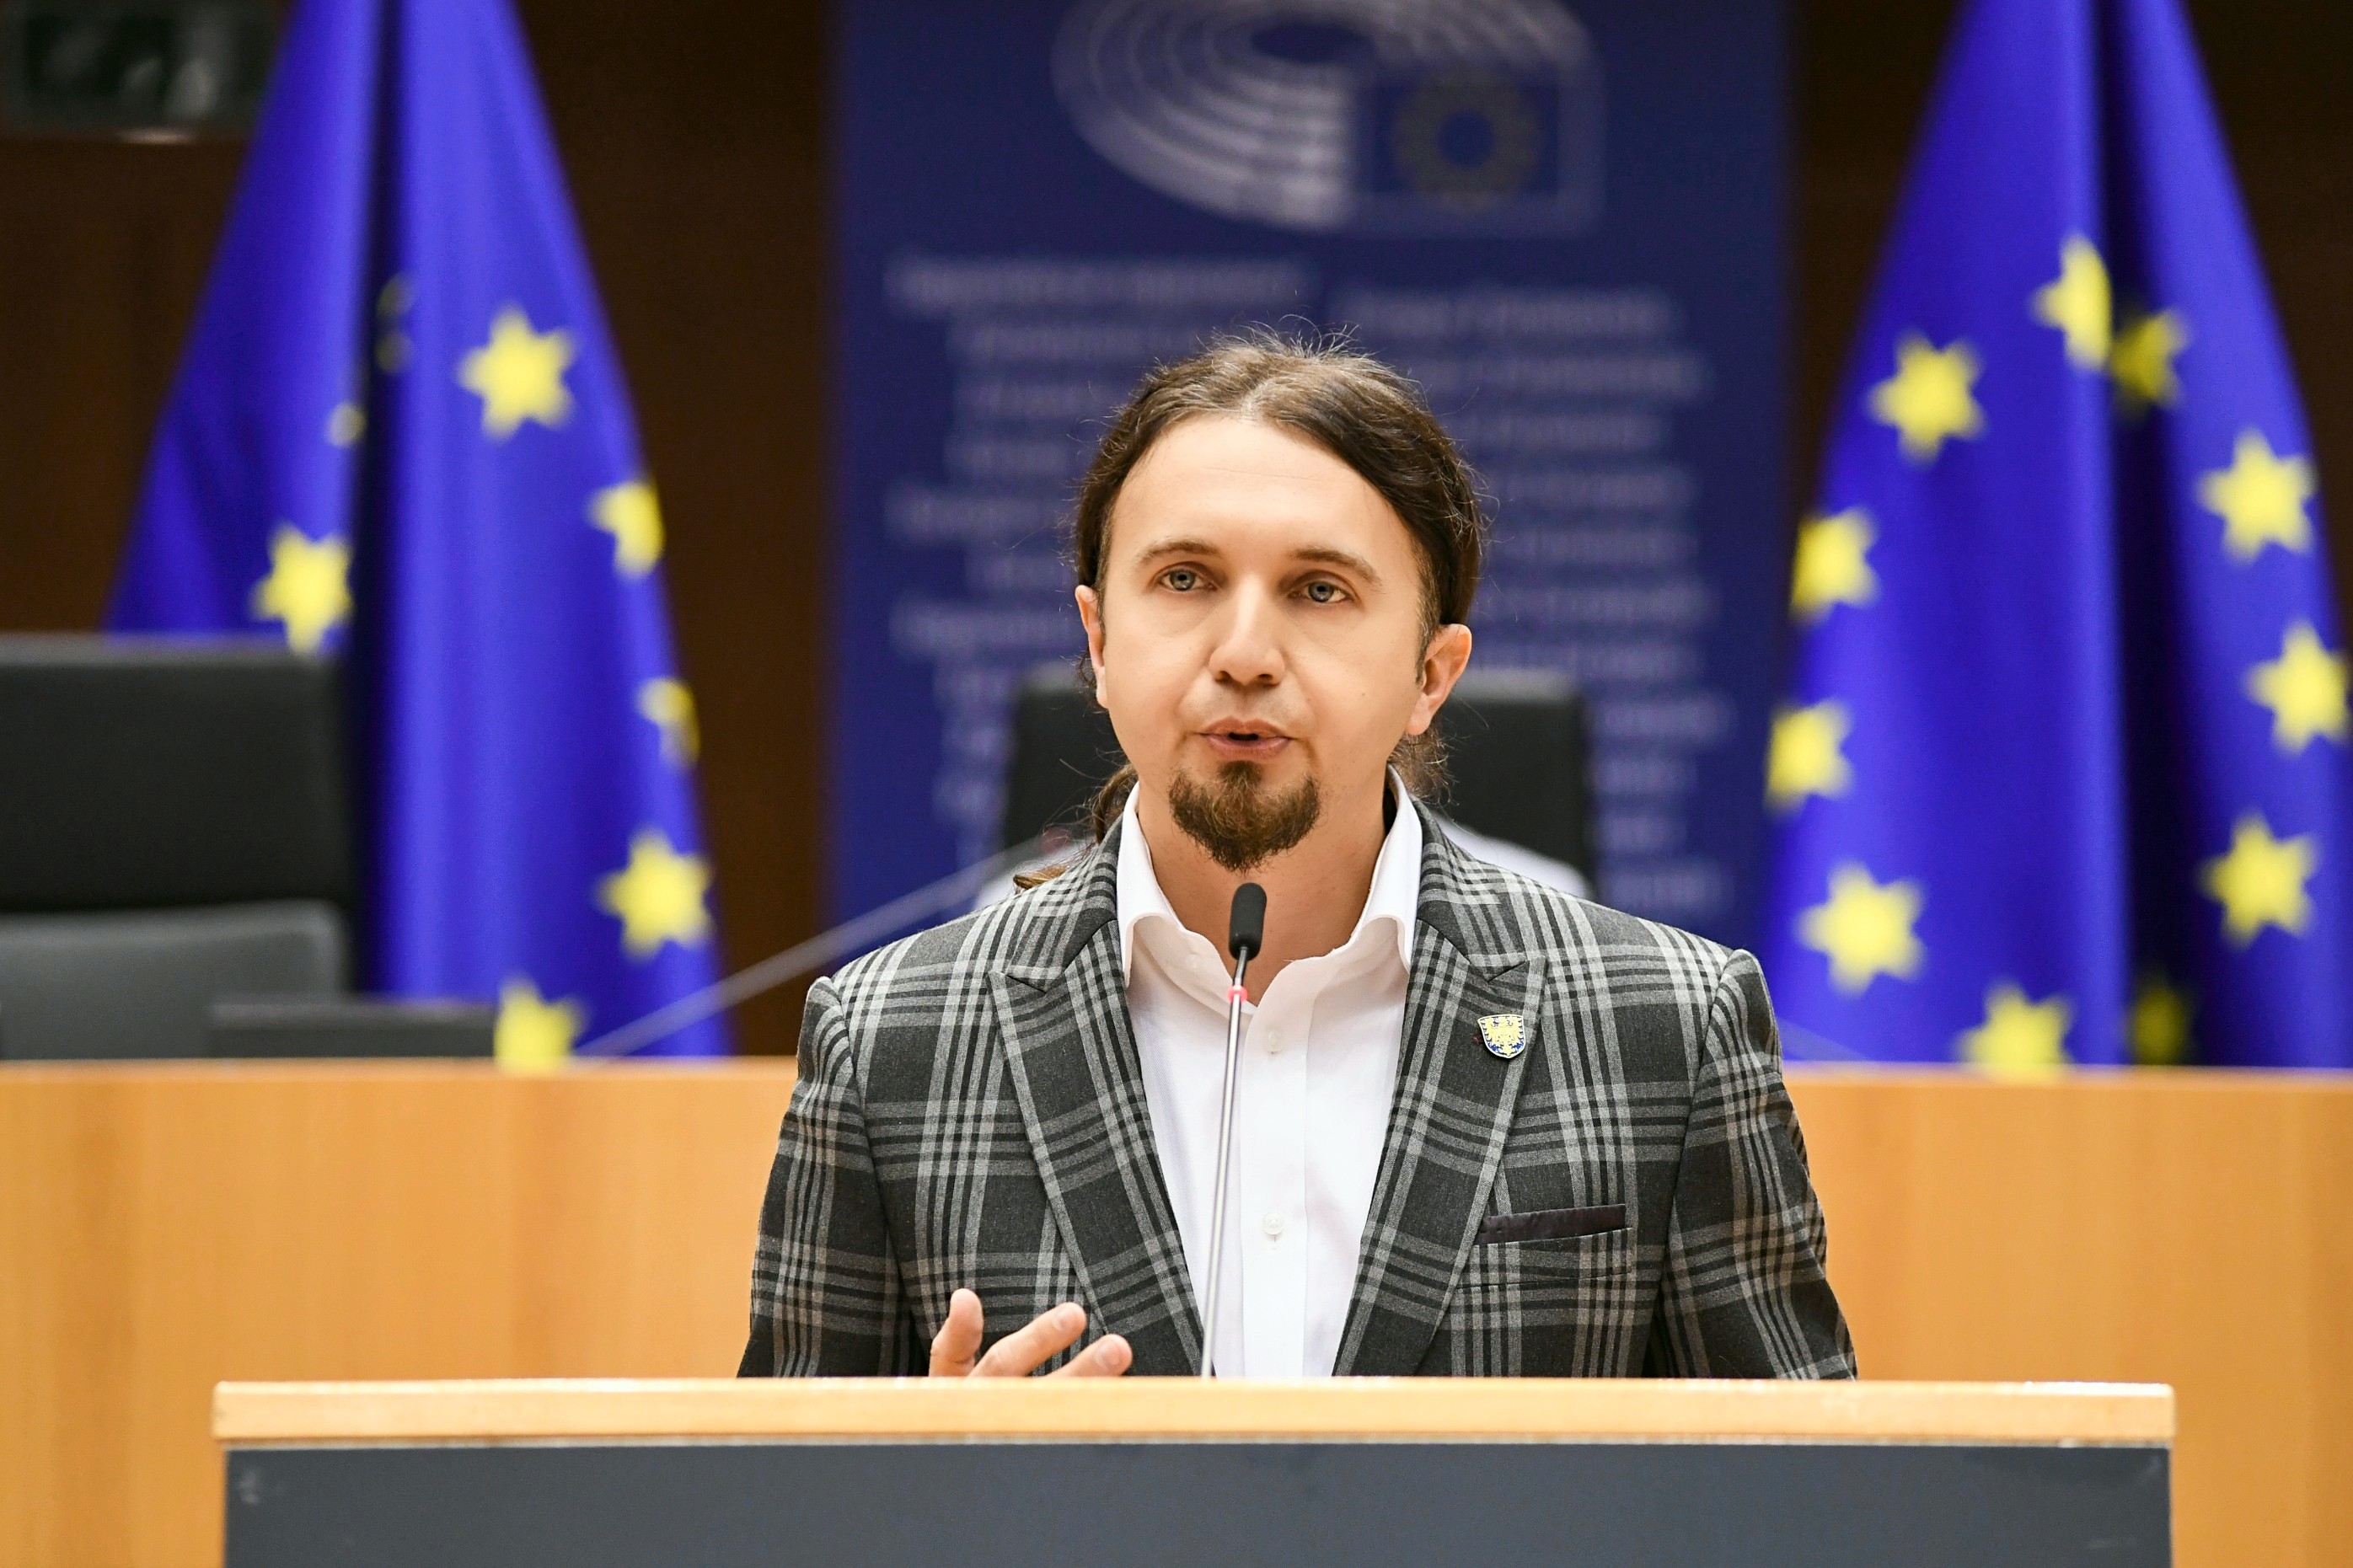 Arc Łukasz Kohut Łukasz Kohut mówił w europarlamencie po śląsku, czym sprawił kłopot tłumaczom 